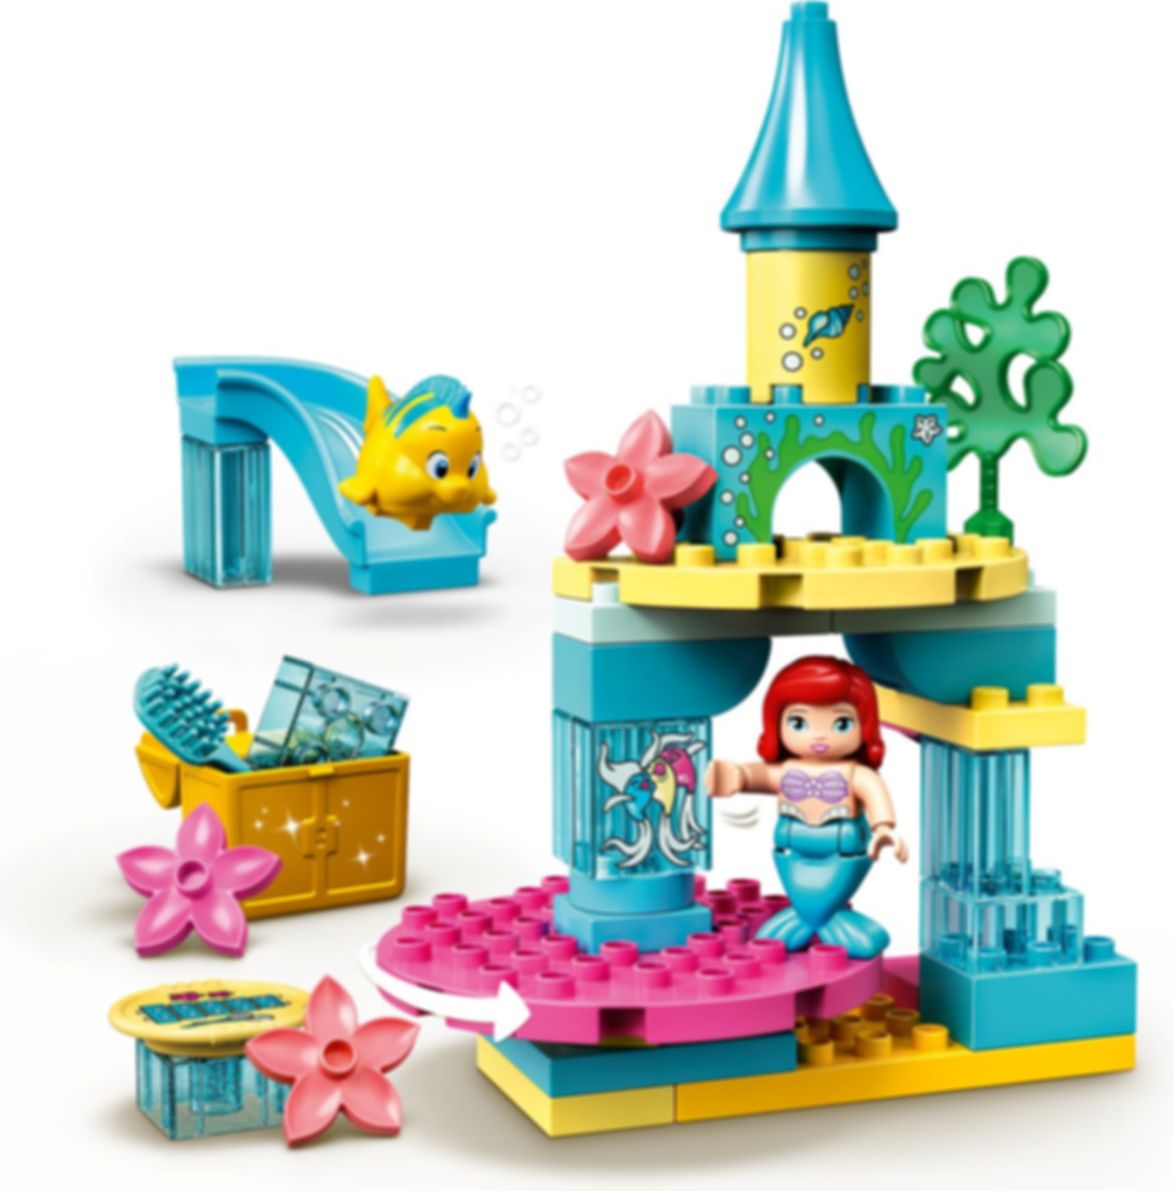 LEGO® DUPLO® Ariel's Undersea Castle components